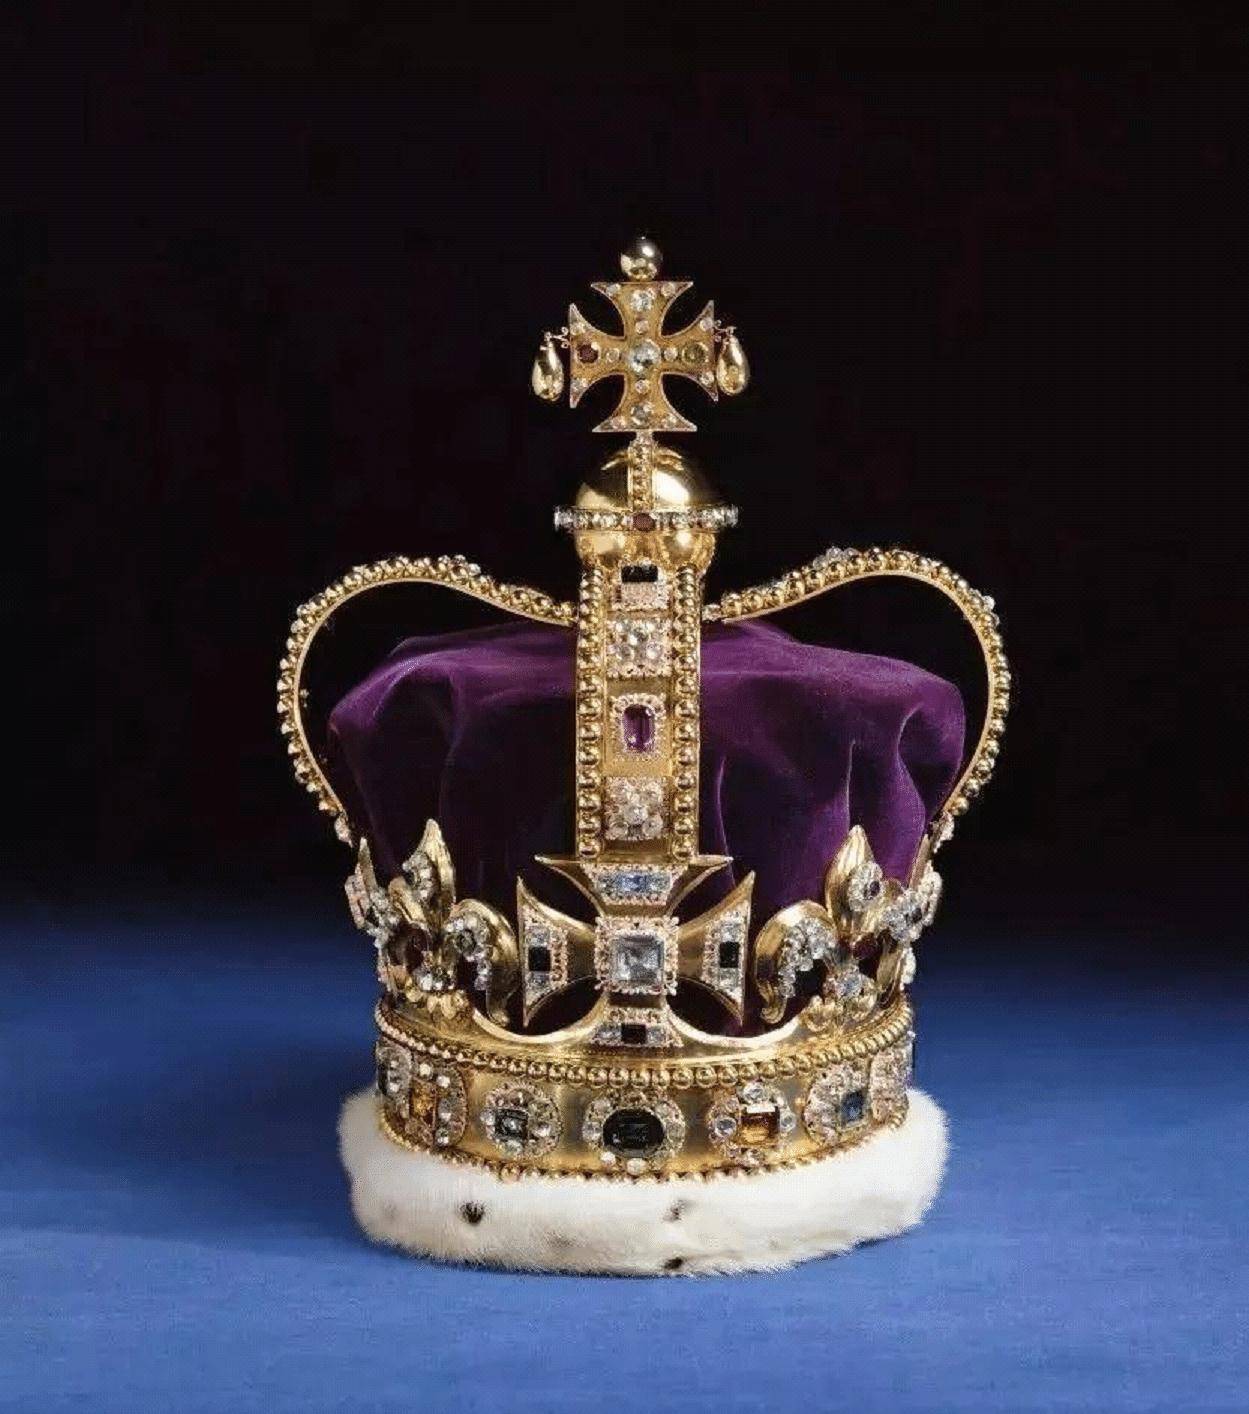 欧洲皇室的稀世皇冠,每一顶都美到极致,珍珠控的你不容错过